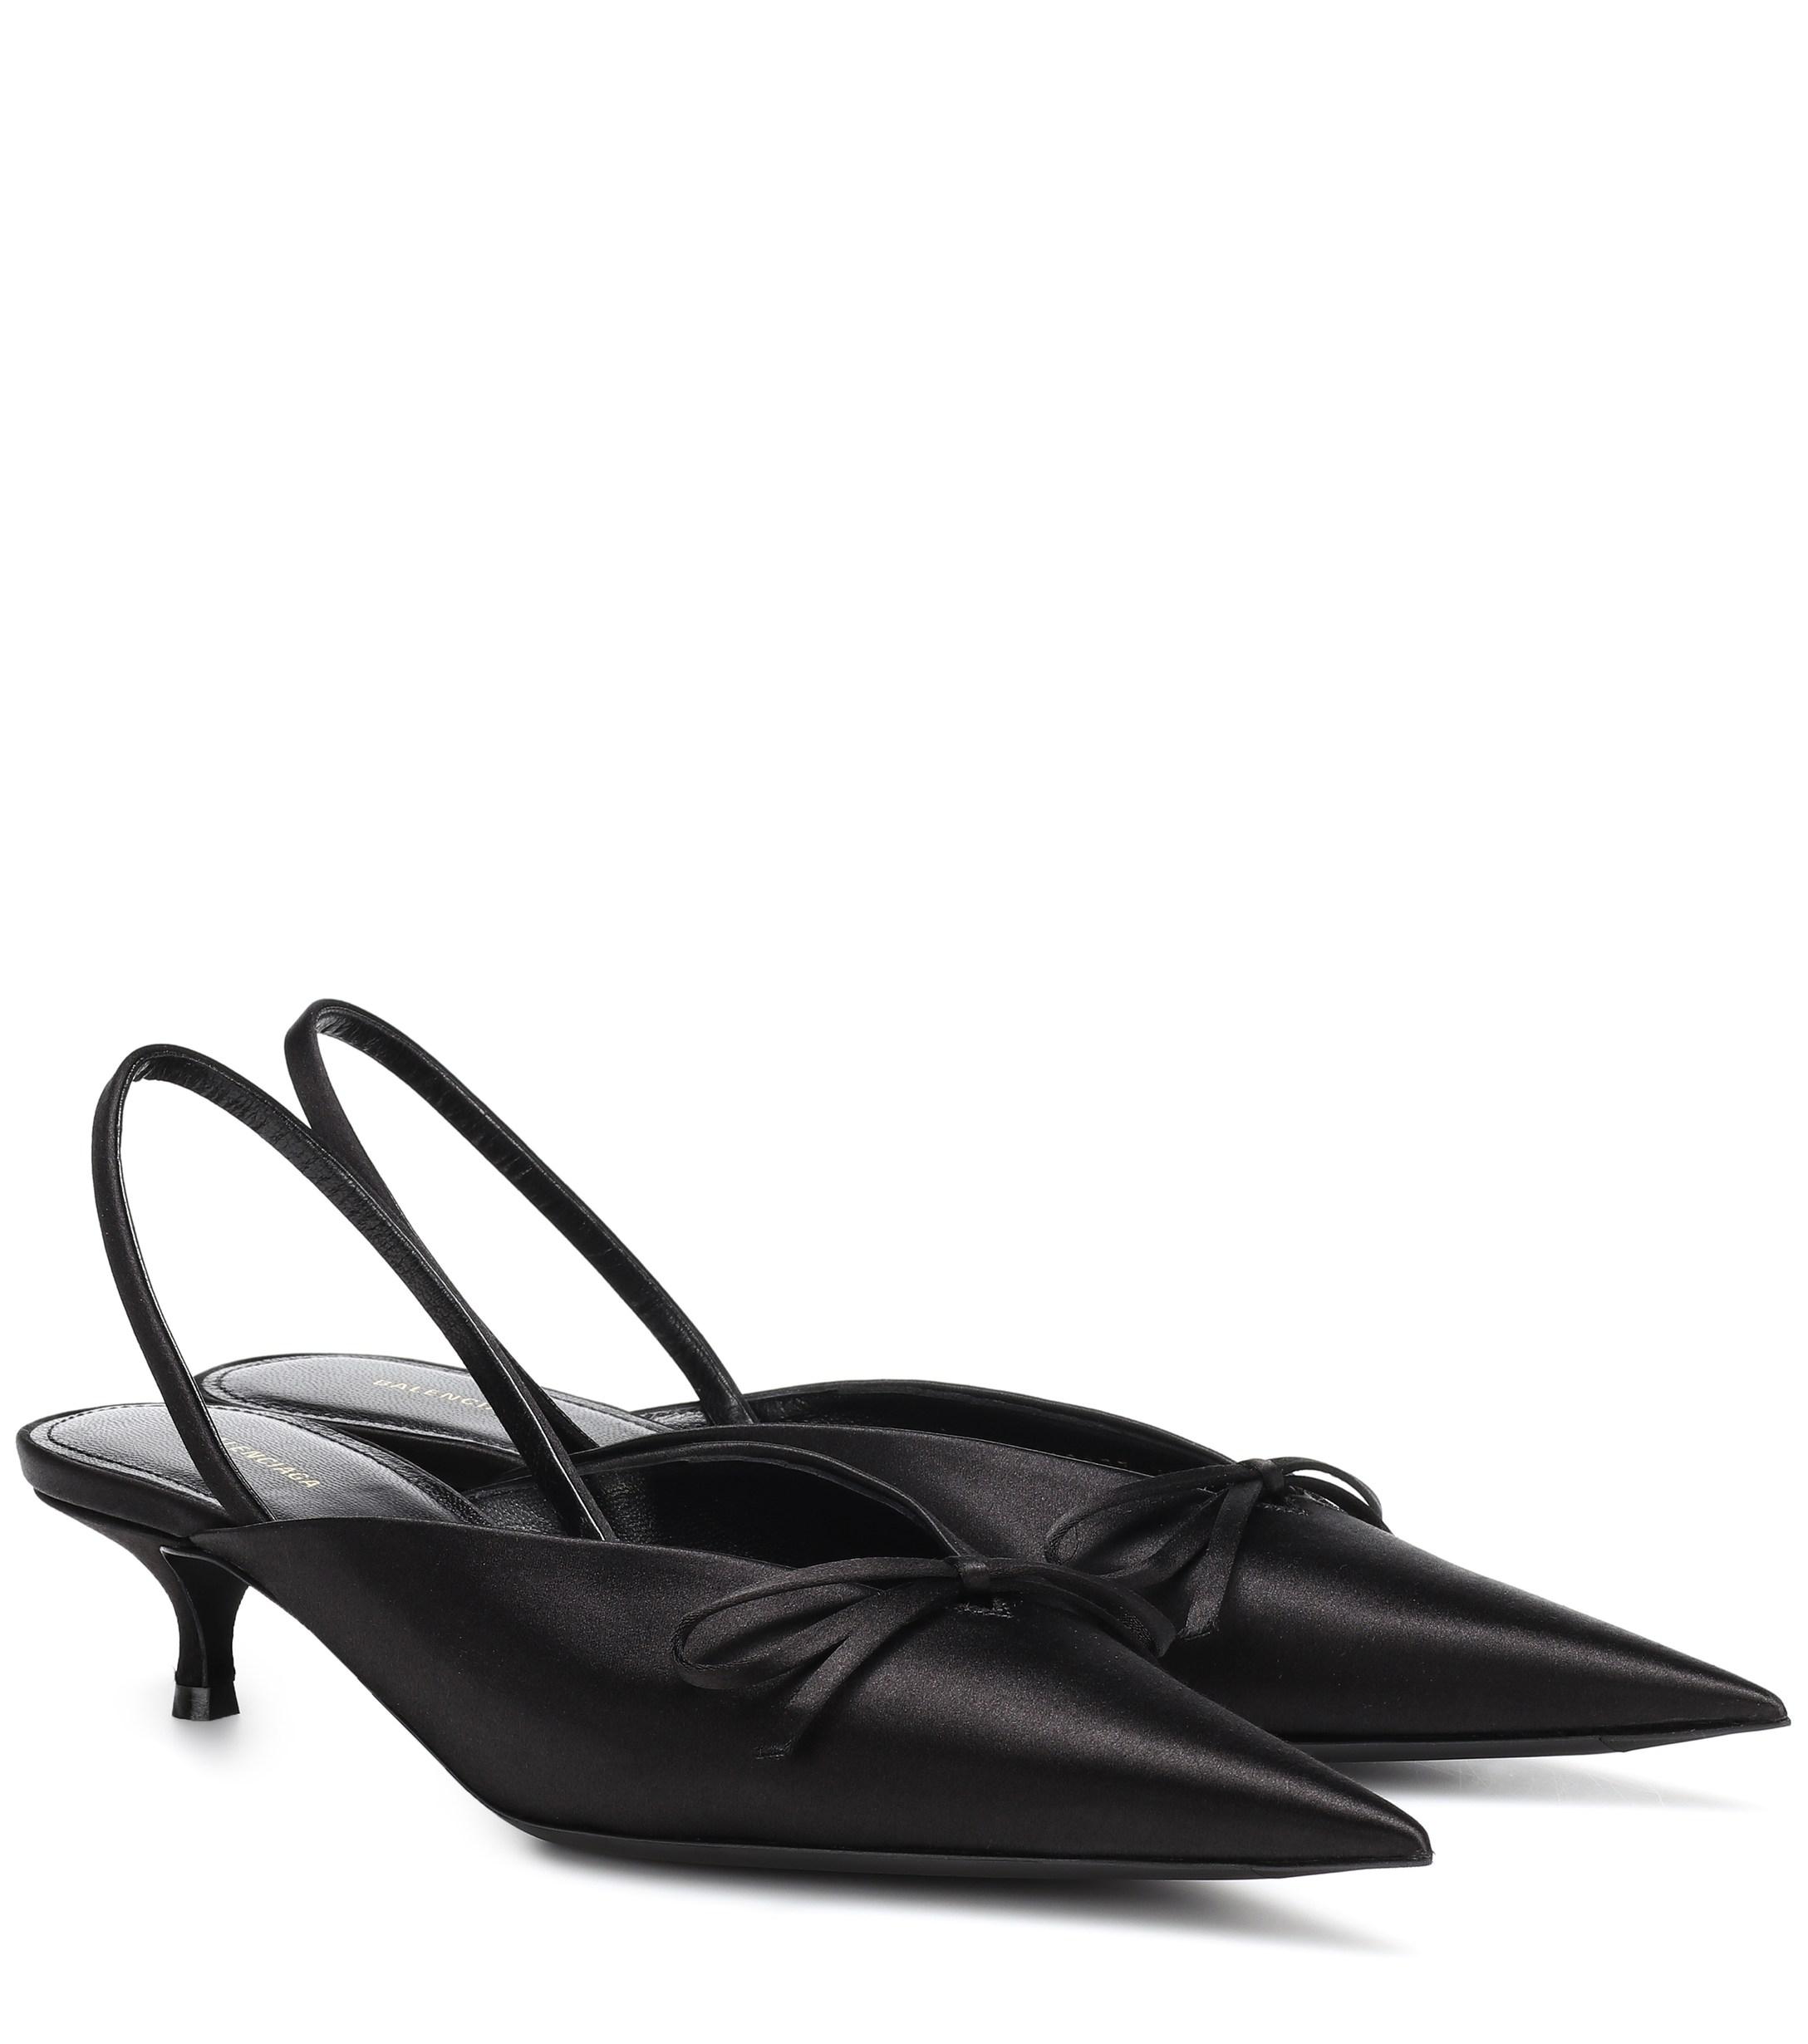 Balenciaga Knife Sling-back Leather Kitten Heel Pumps in Black | Lyst